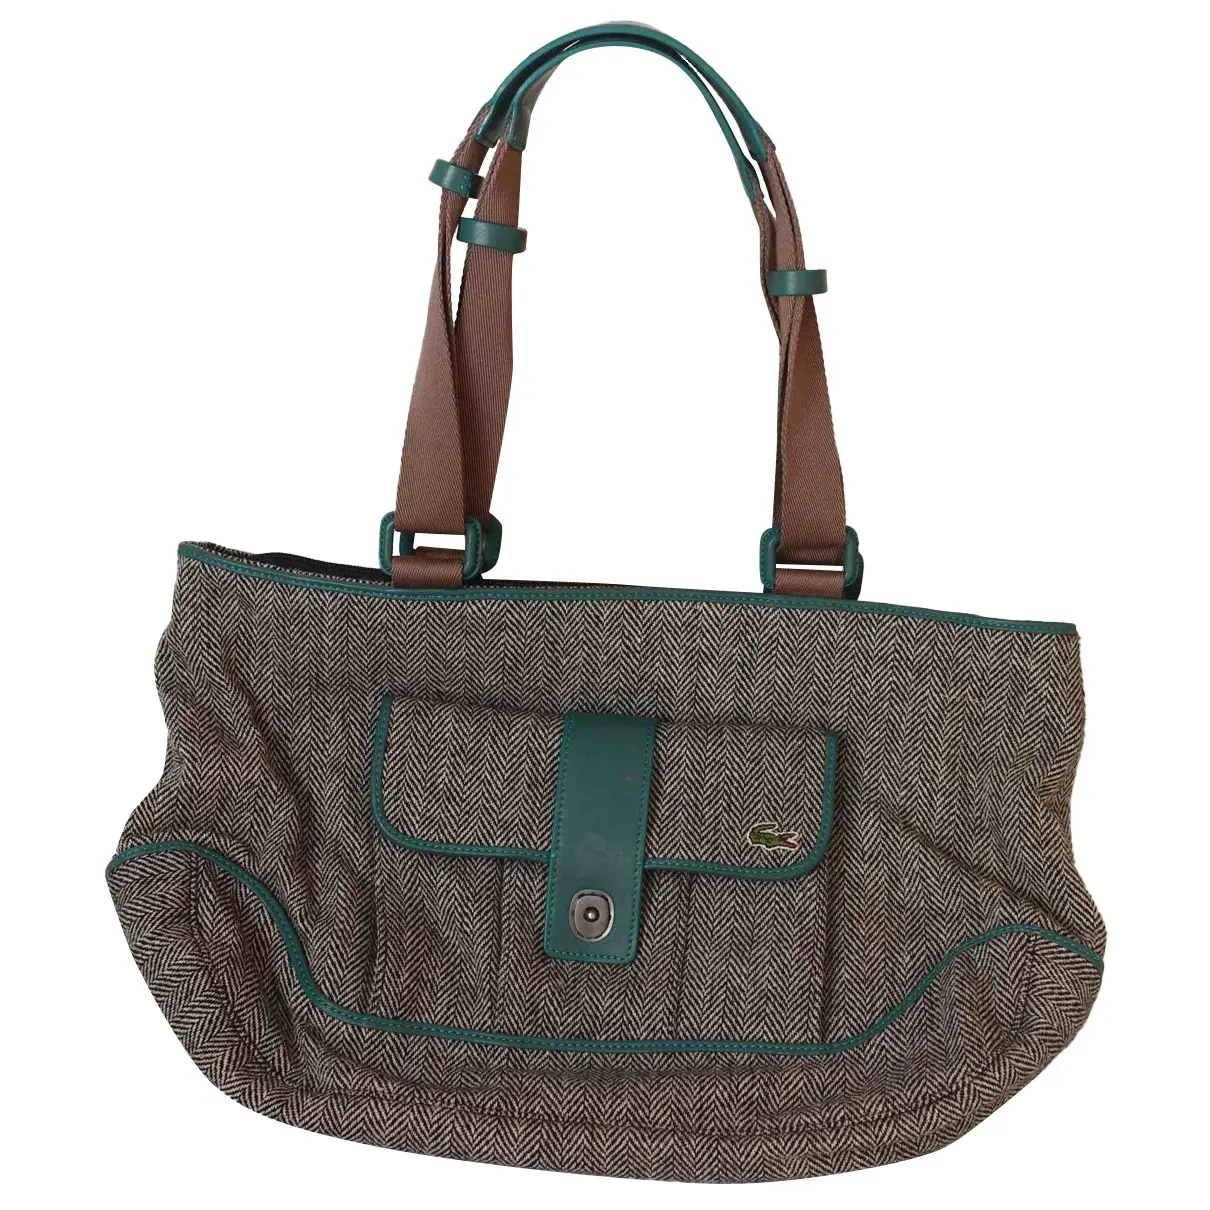 Tweed handbag Lacoste